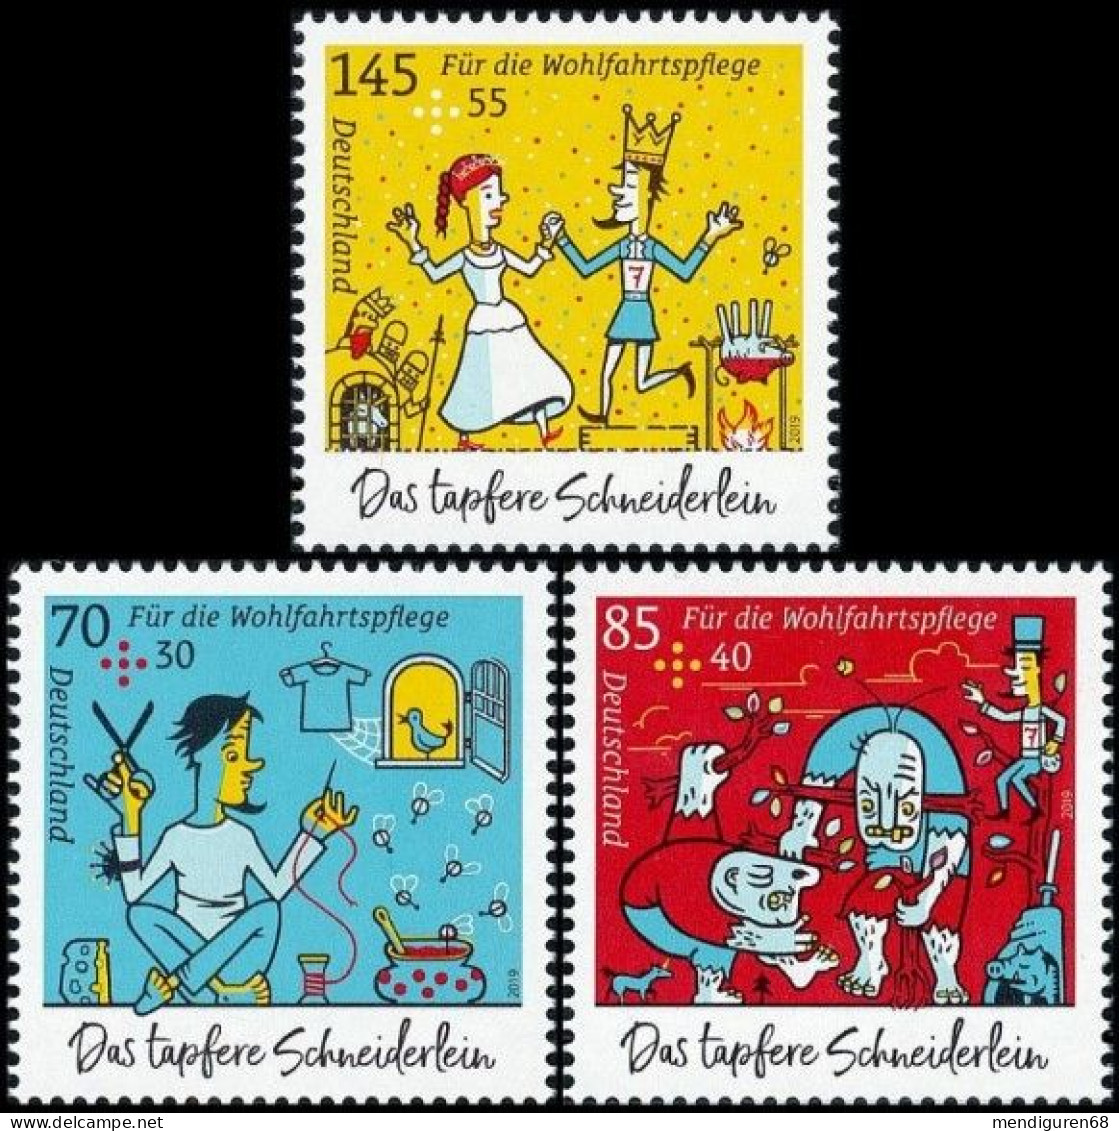 ALLEMAGNE ALEMANIA GERMANY DEUTSCHLAND BUND   2019 THE BRAVE LITTLE TAILOR SET 3V MNH MI 3438-40 YT F3216-18 SN B1150-52 - Unused Stamps